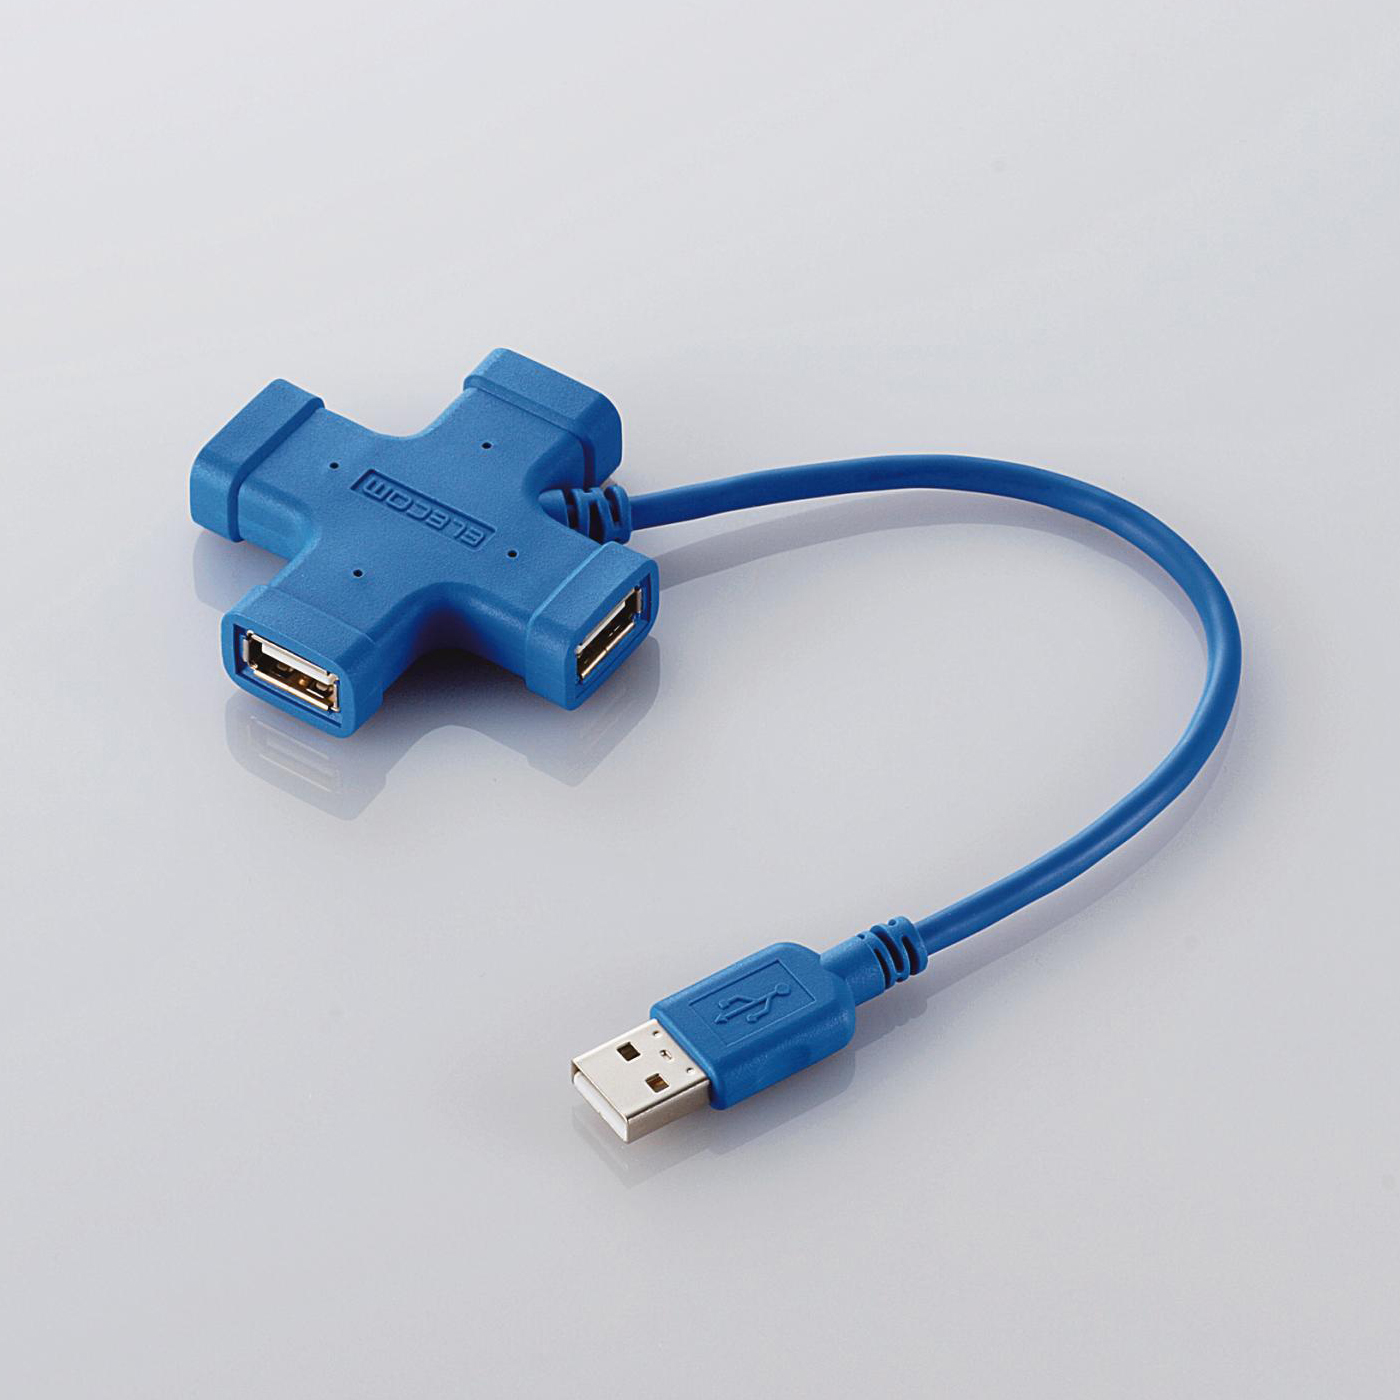 Immagine pubblicata in relazione al seguente contenuto: Da Elecom tre nuovi HUB USB 2.0 dal design atipico | Nome immagine: news4381_3.jpg